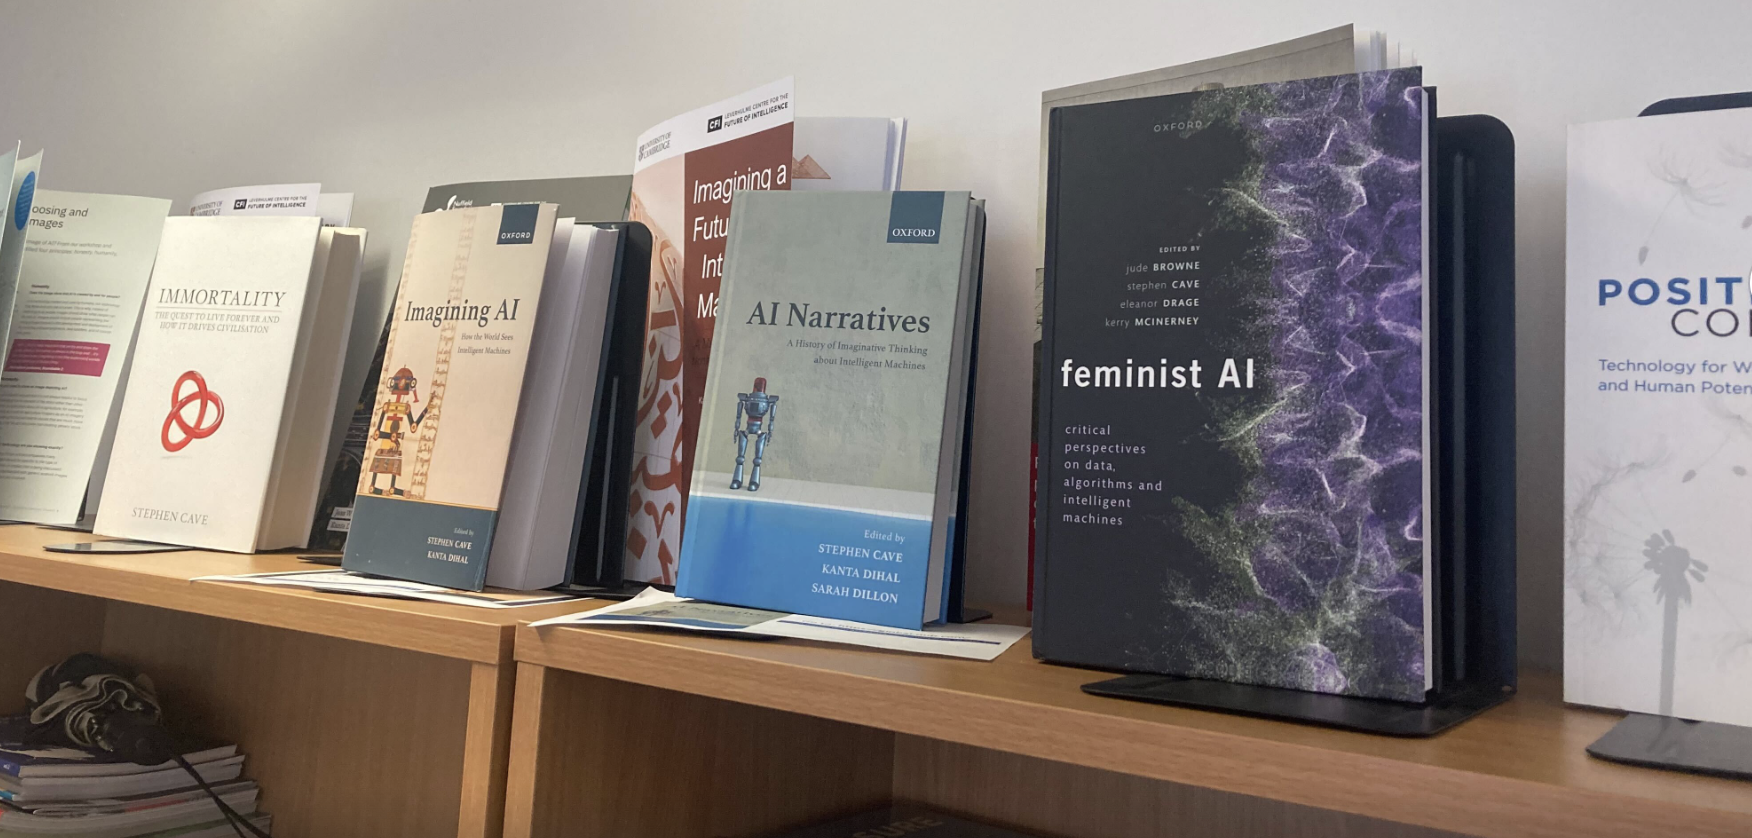 Feminist AI on a shelf